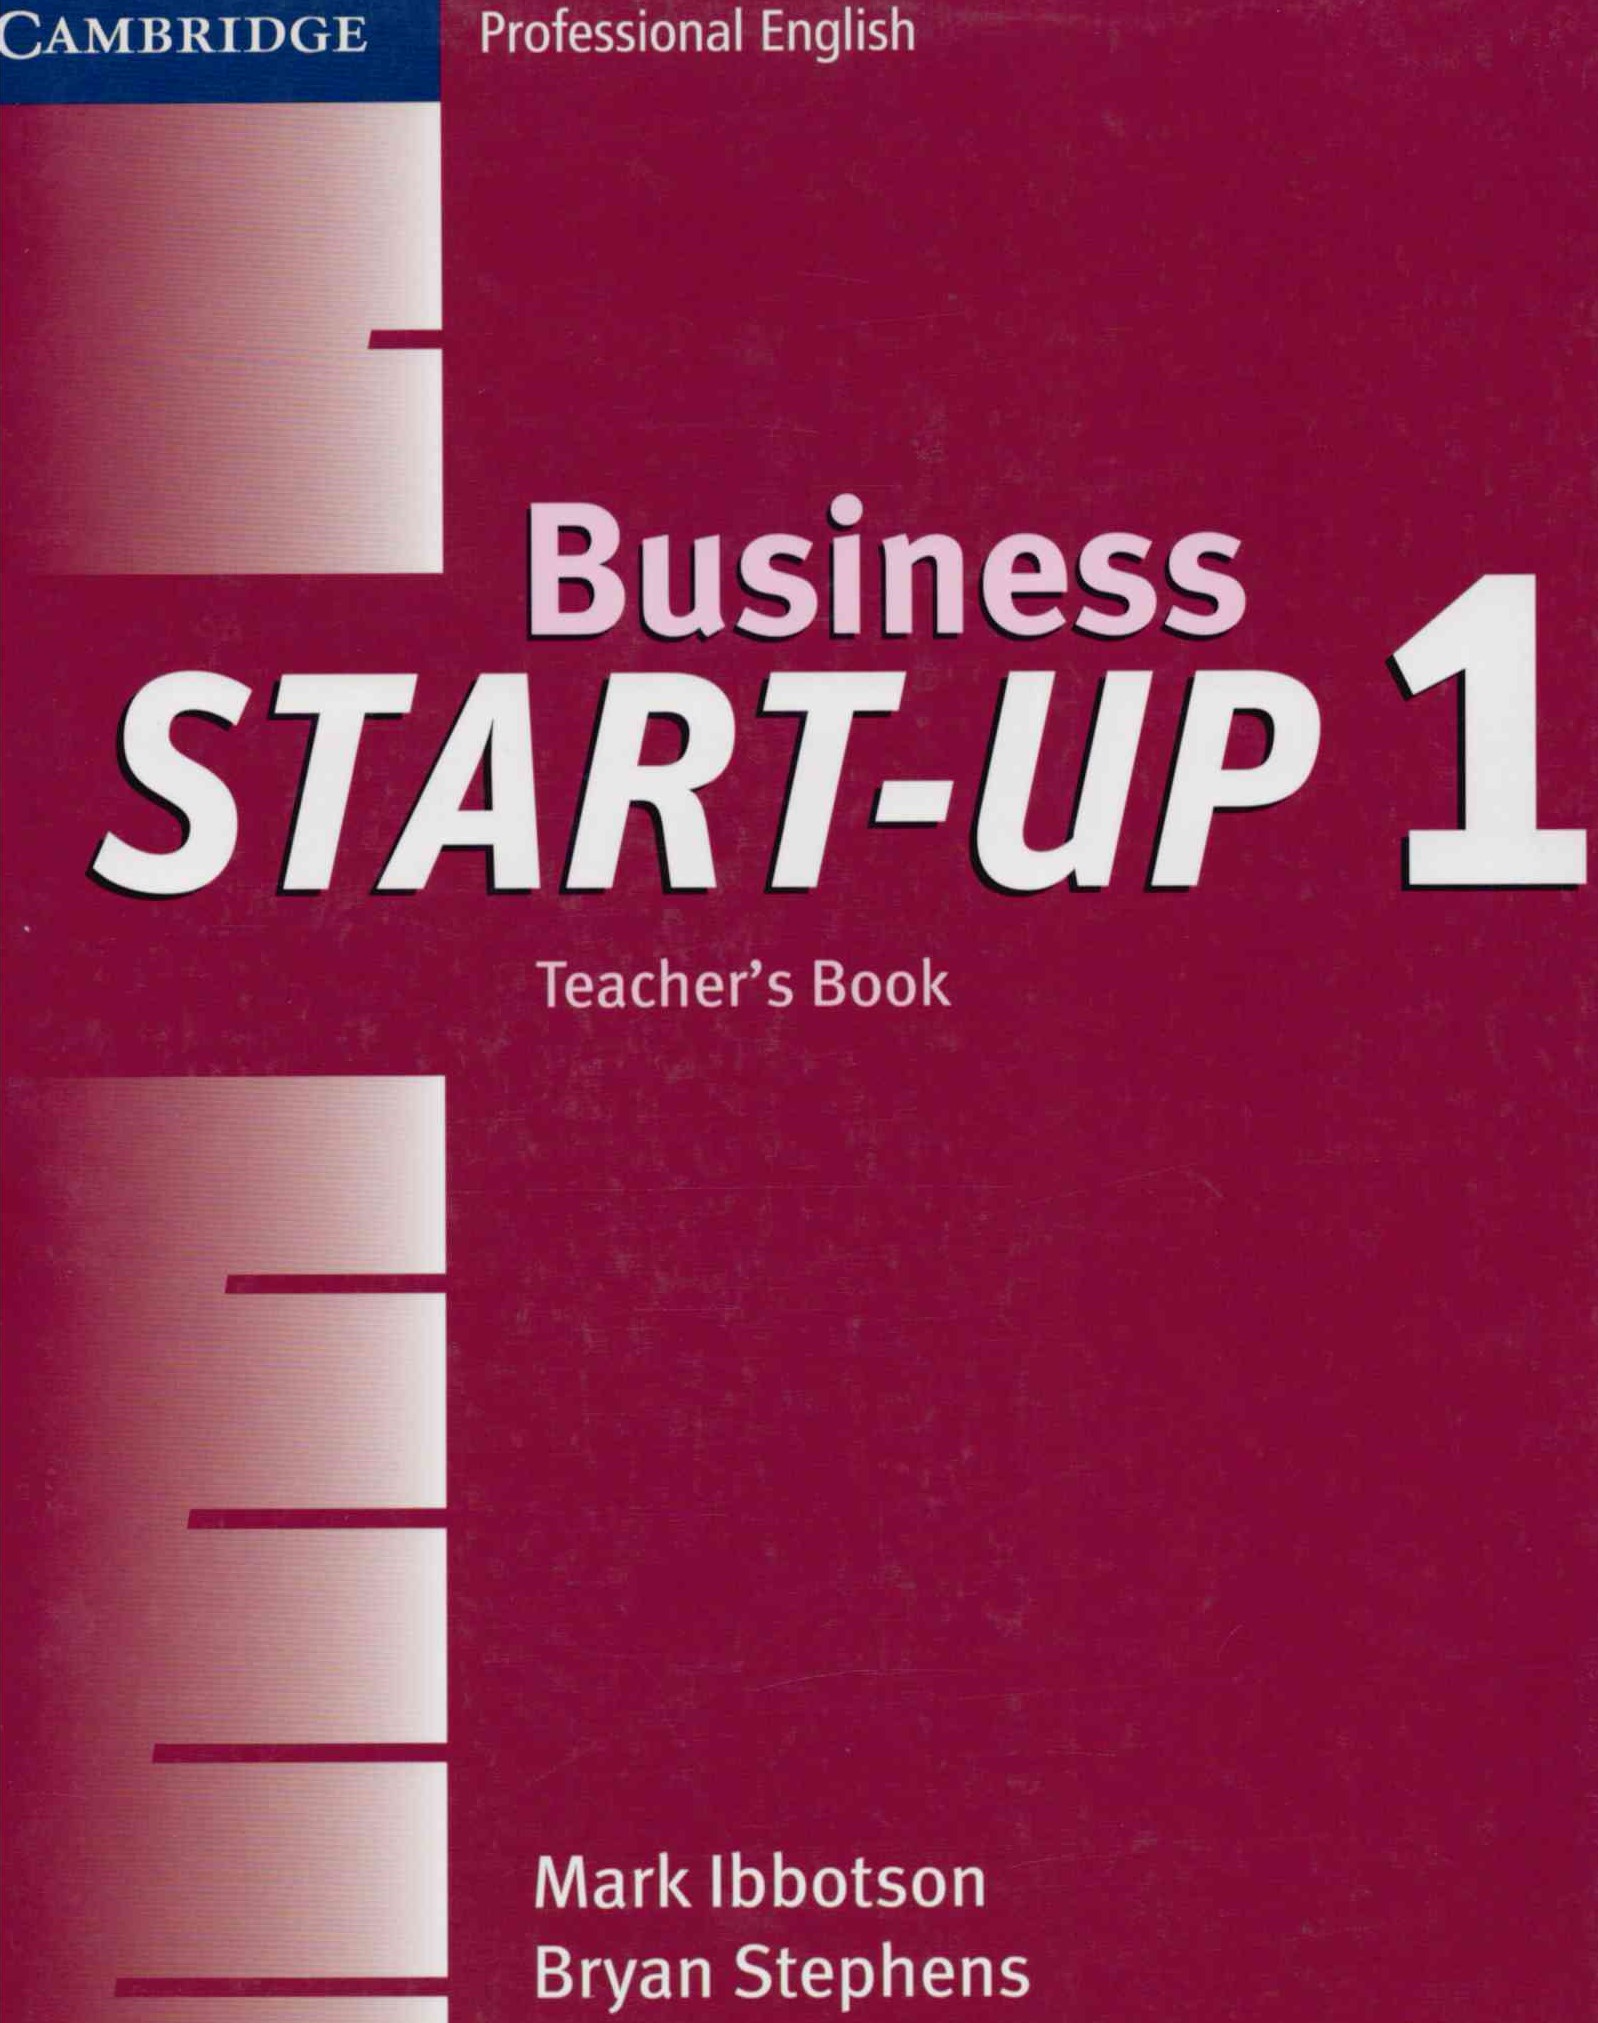 Business Start-Up 1 Teacher's Book / Книга для учителя